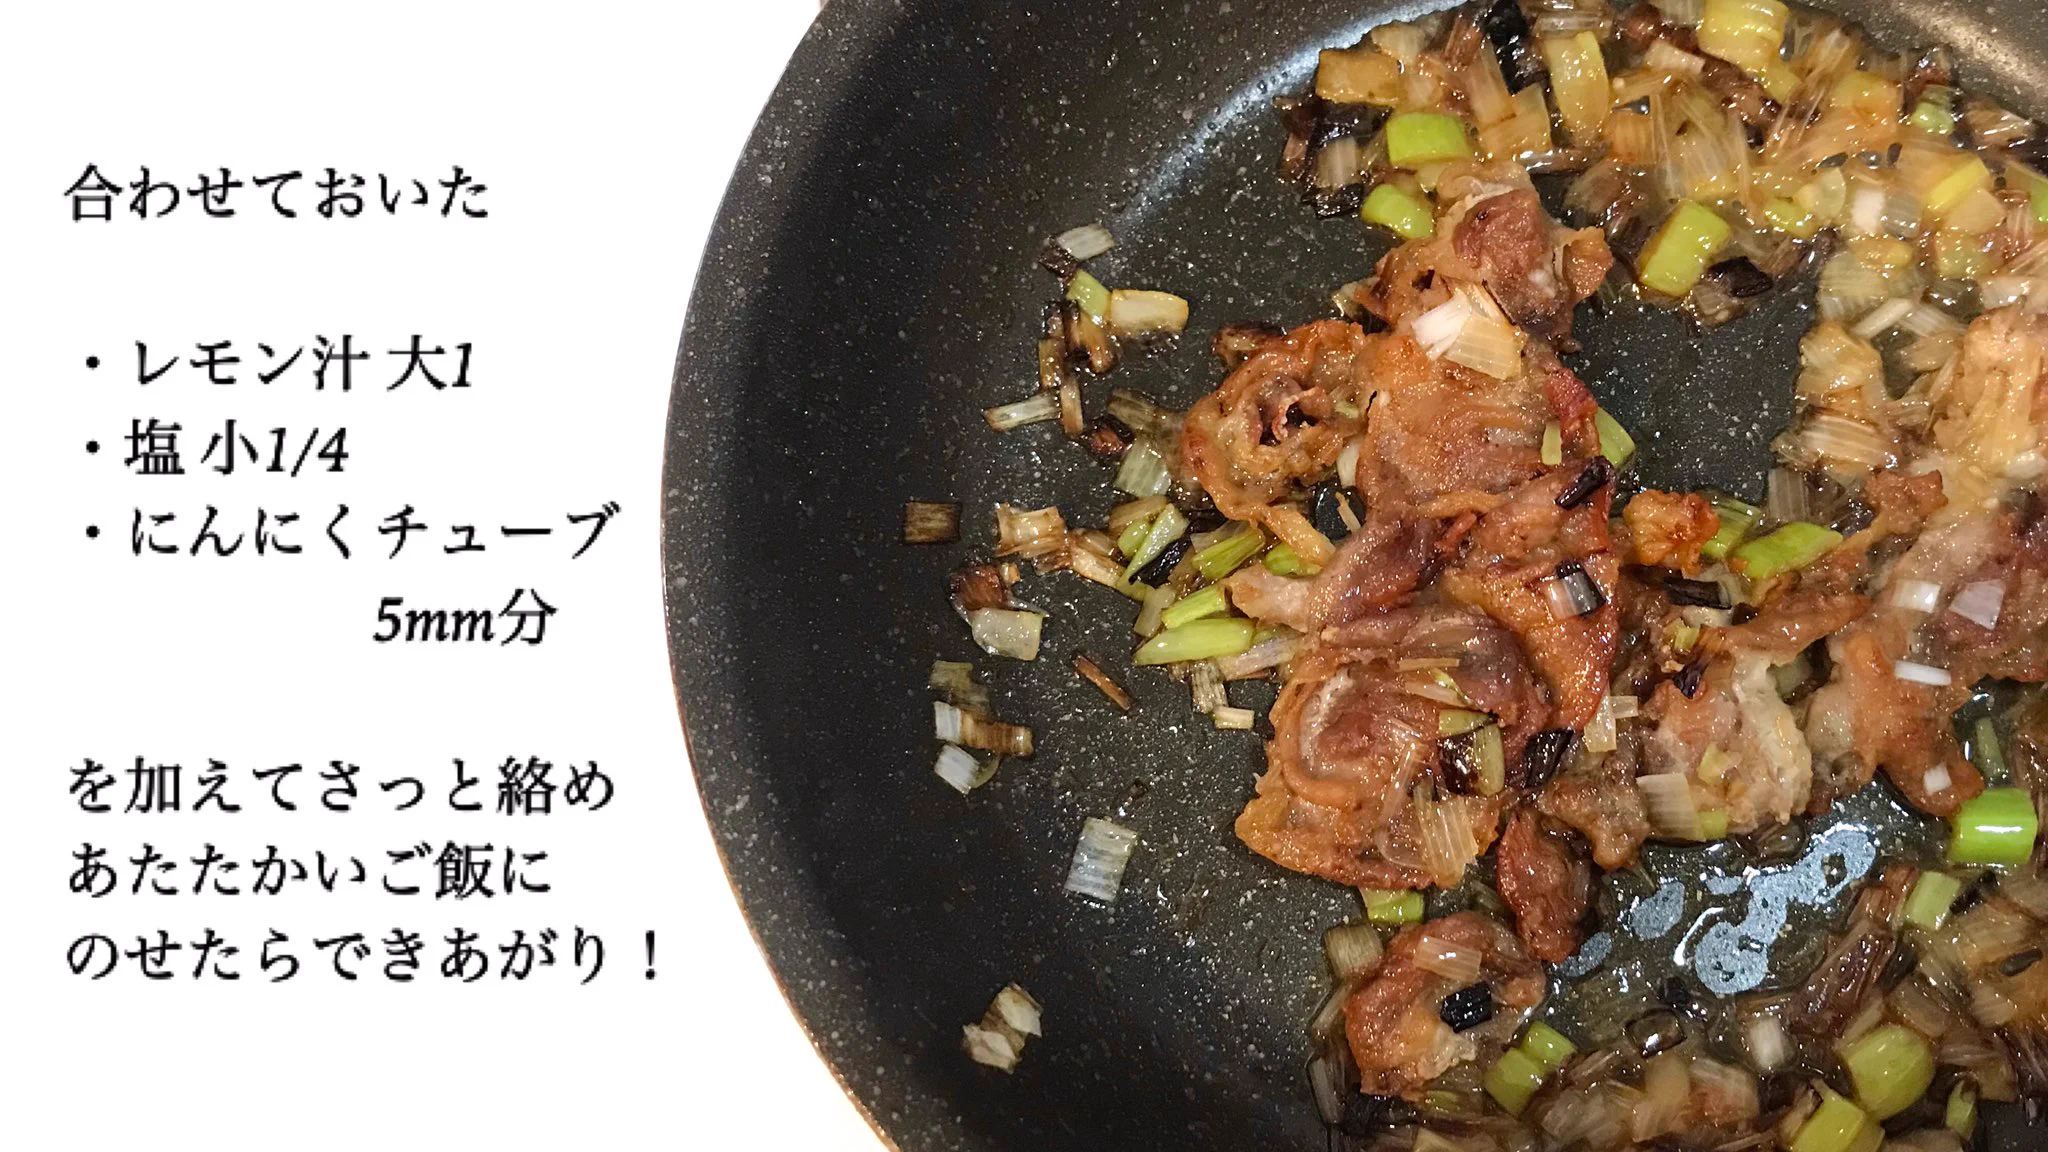 ネギ塩の味付けがすごく美味しそう！作り方も簡単な「豚丼」レシピ！